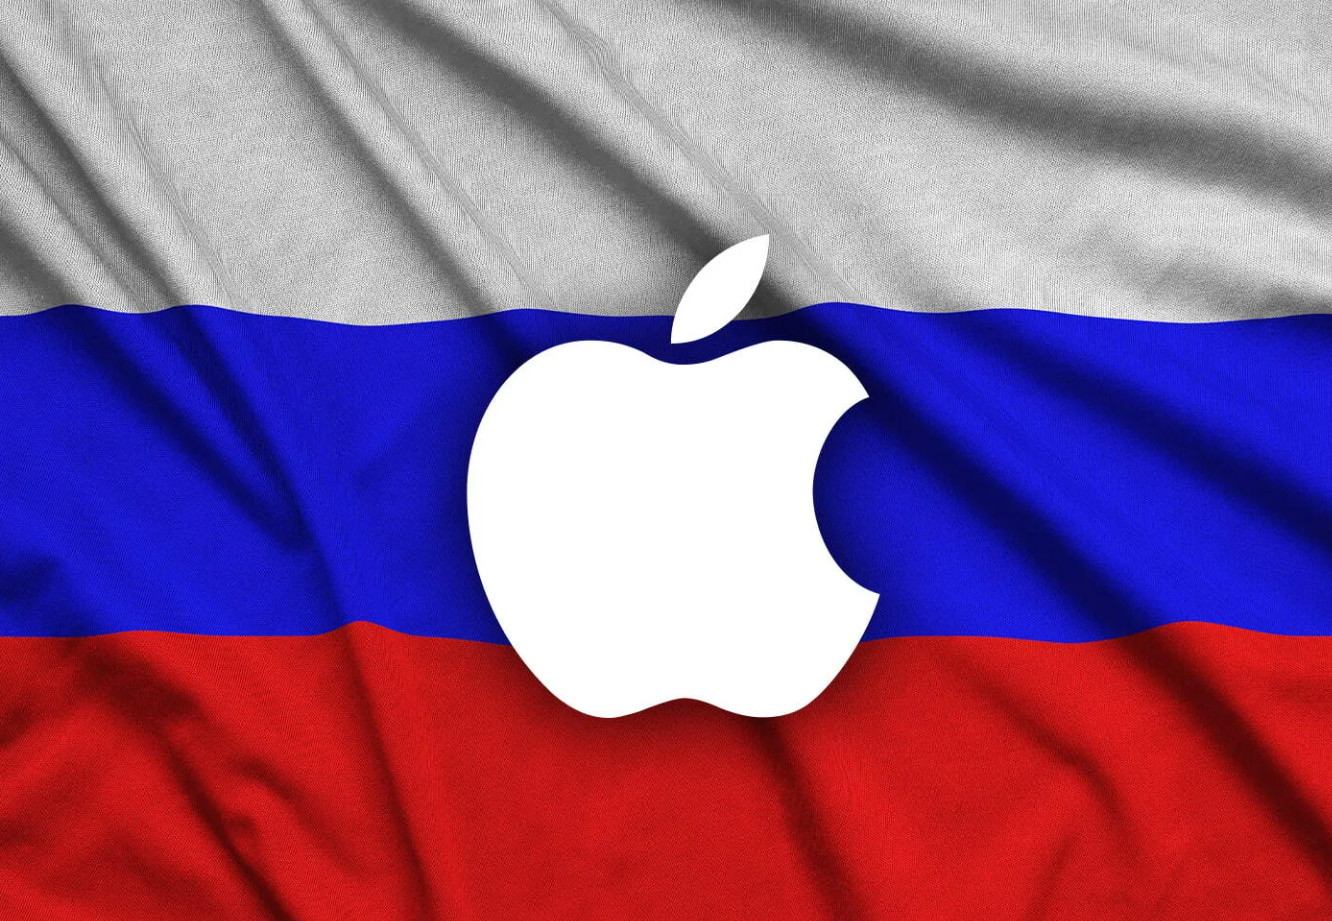 俄羅斯因無法使用 Apple Pay 向蘋果要求精神賠償 | Apple News, Apple Pay, 俄羅斯, 蘋果支付 | iPhone News 愛瘋了